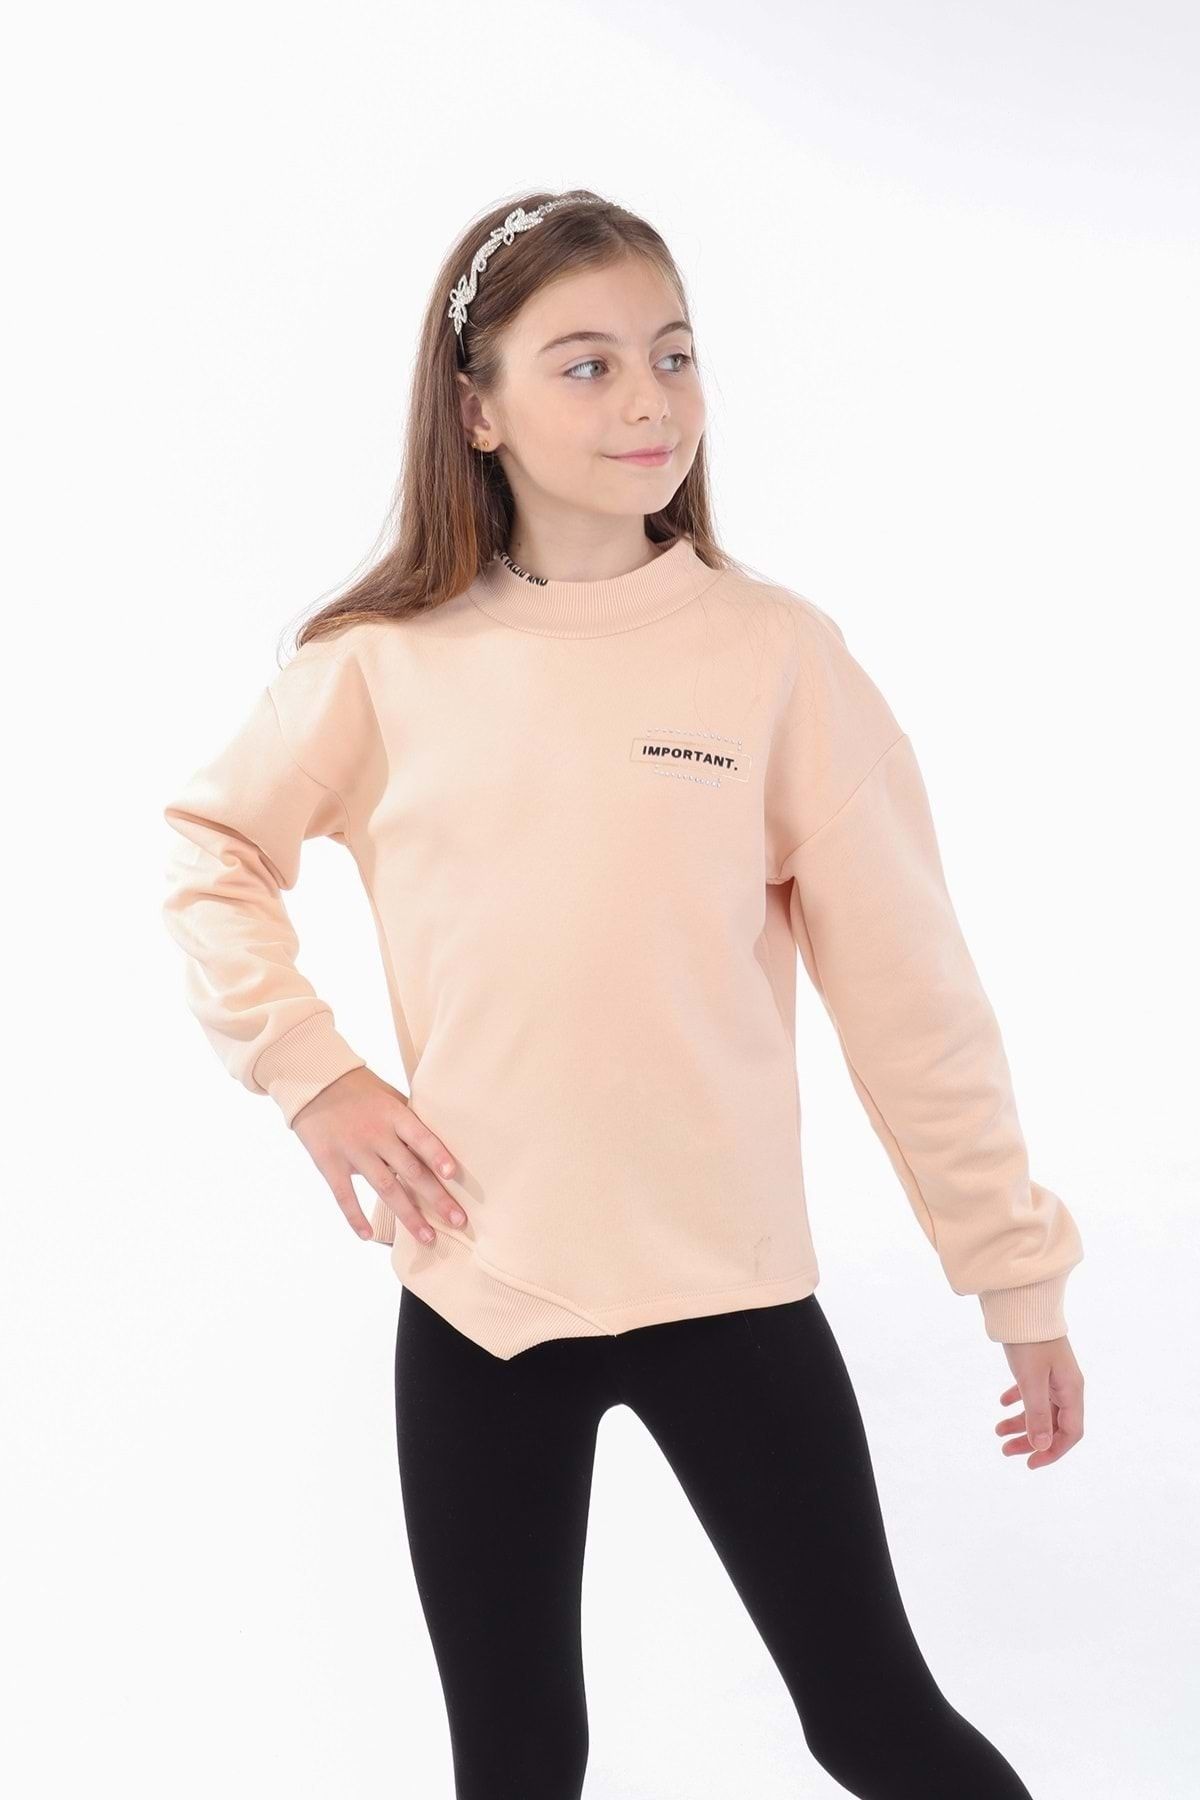 Toontoy Kız Çocuk Baskılı Sweatshirt